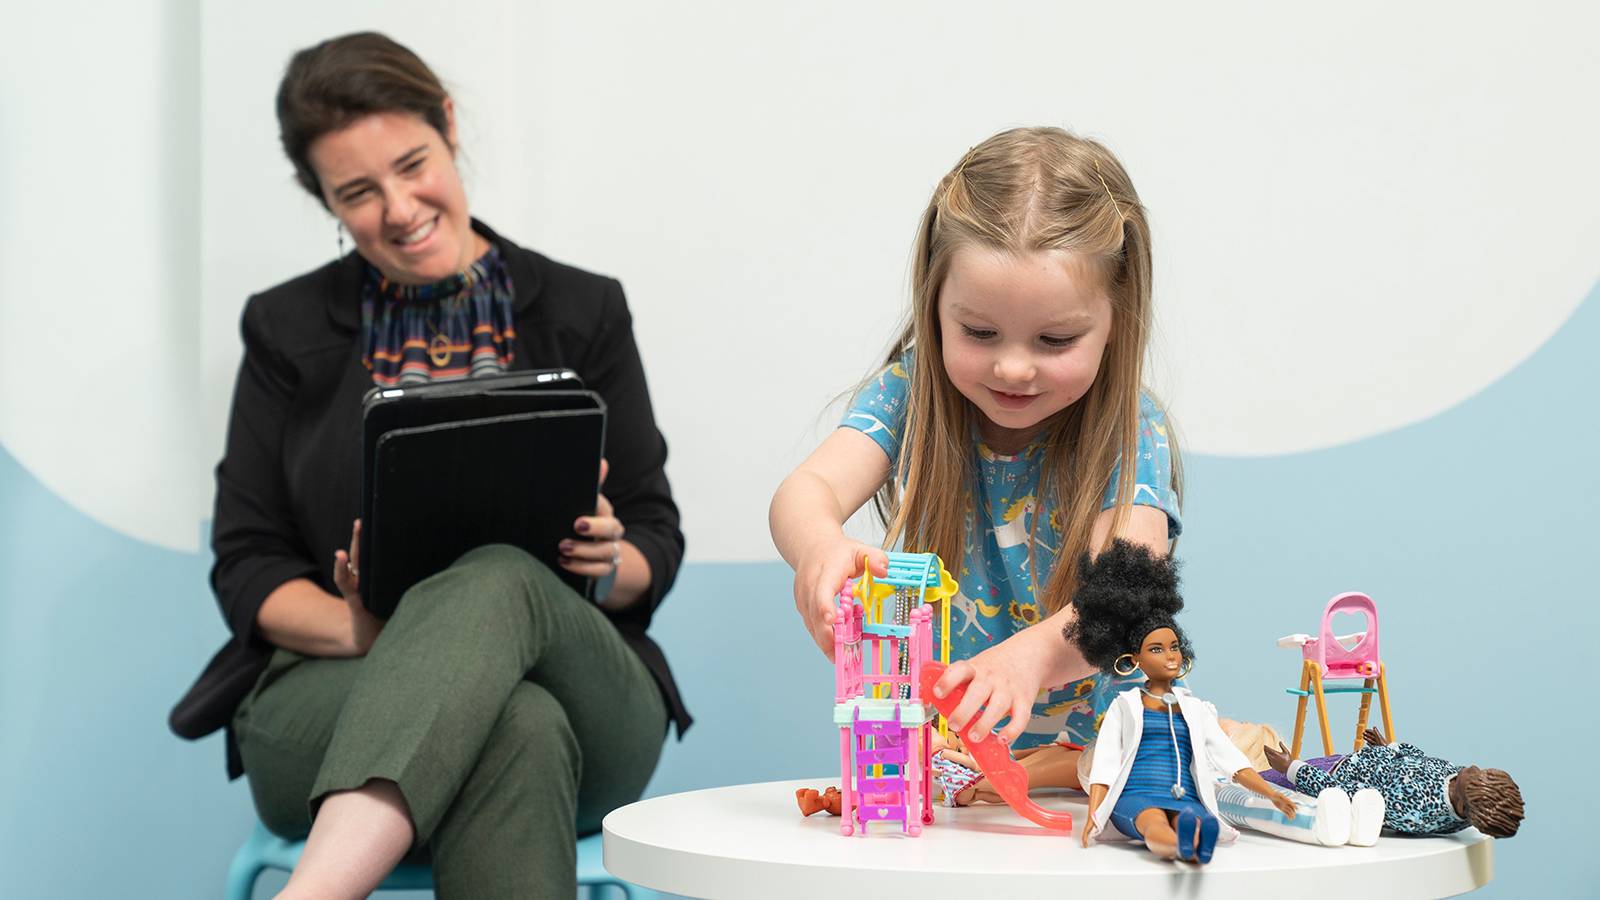 Istraživanje pokazalo da igra s lutkama pomaže djeci u razvoju empatije i socijalnih vještina